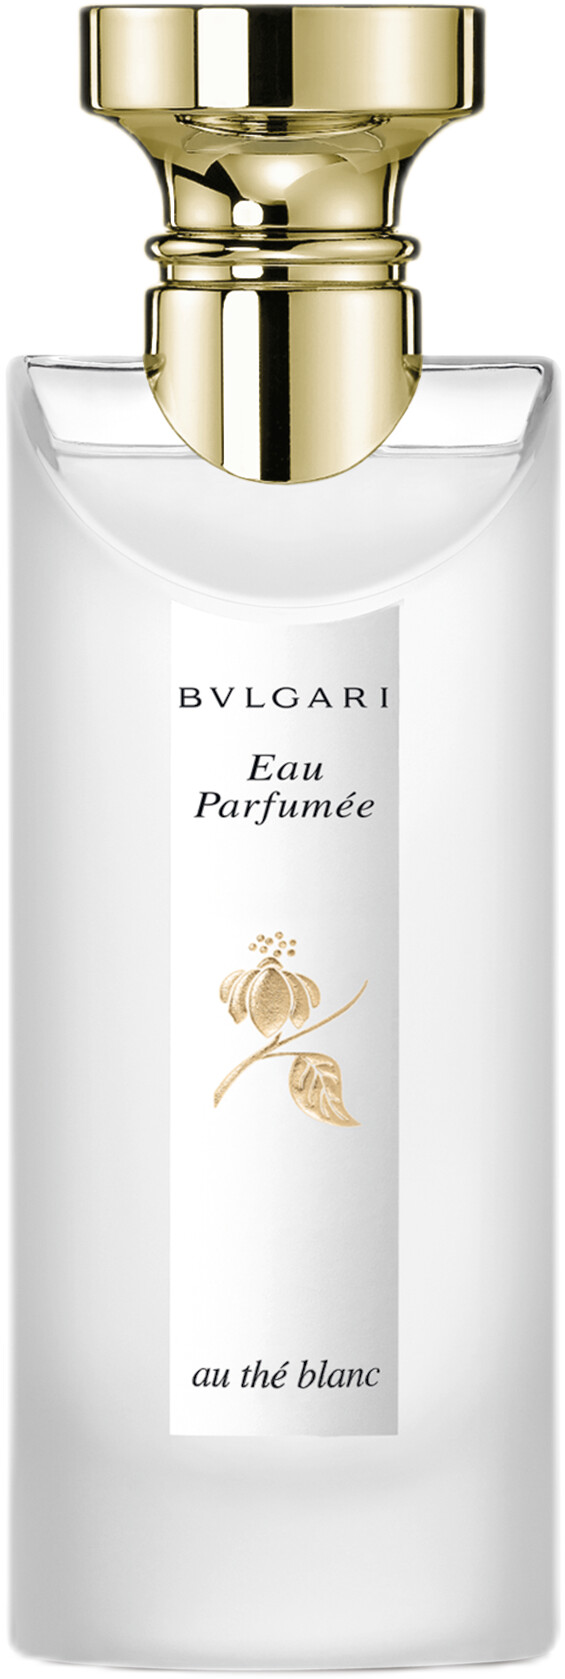 BVLGARI Eau Parfumee Au The Blanc Eau de Cologne Spray 75ml